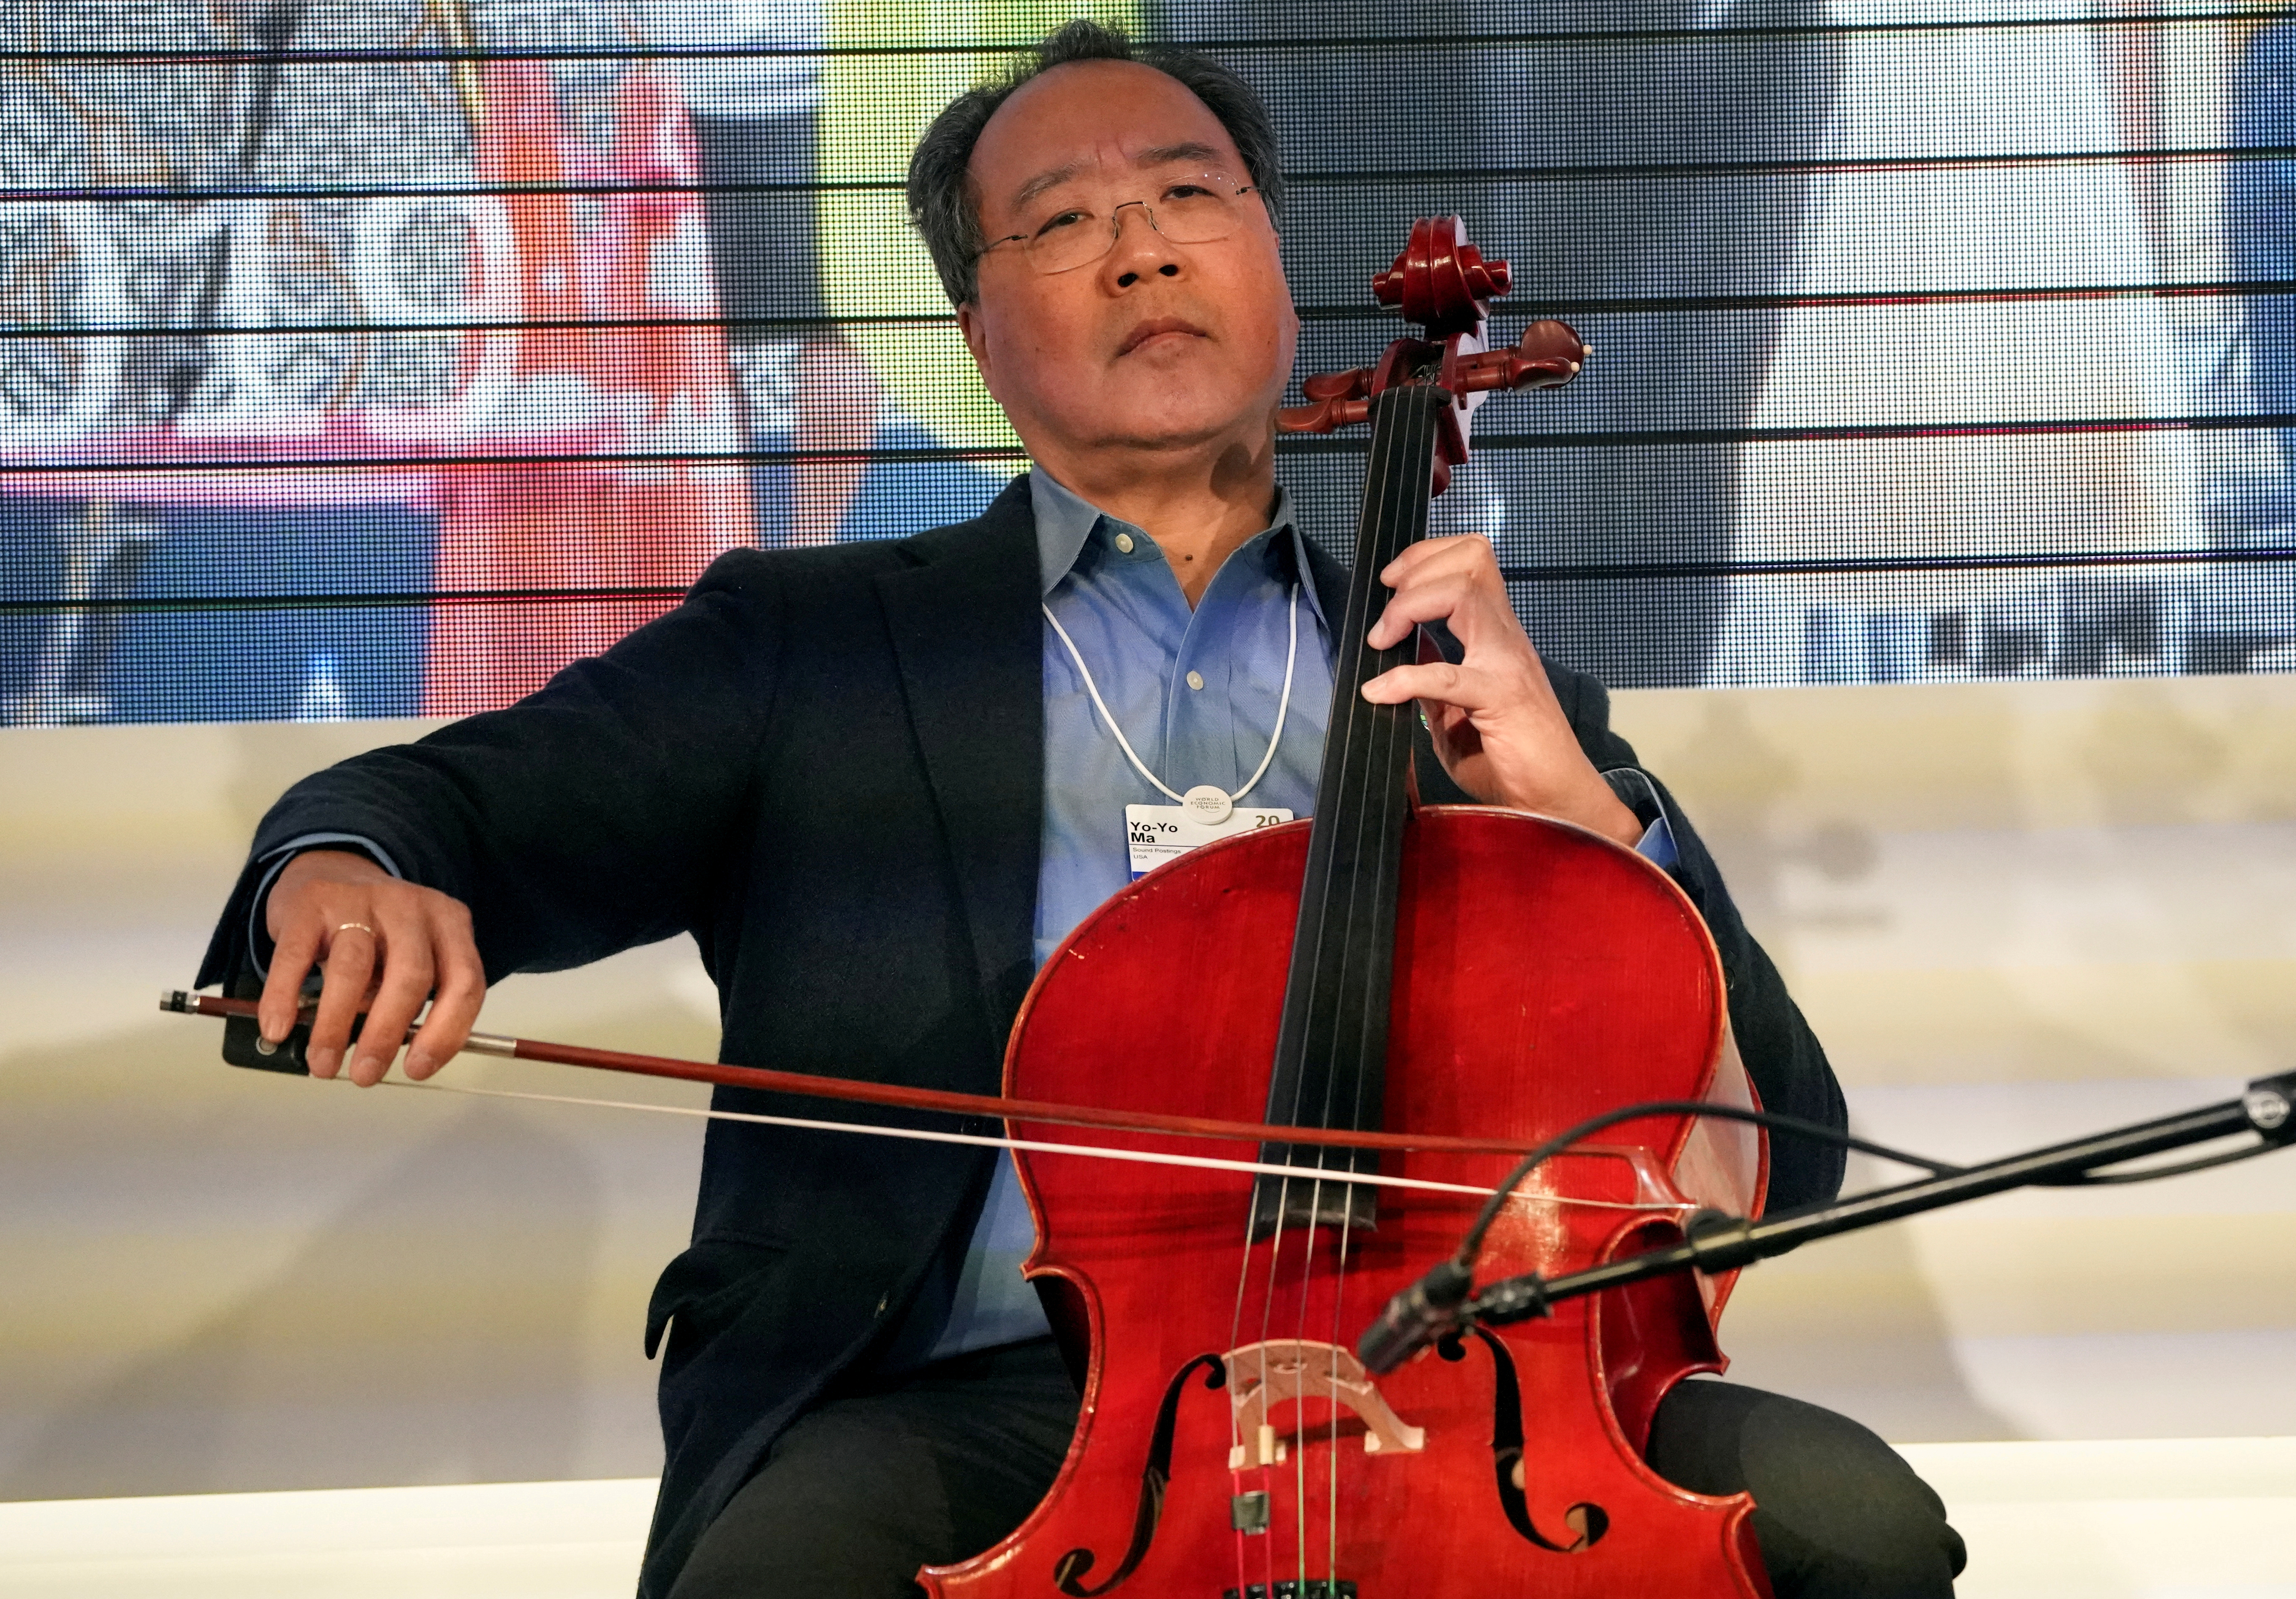 O lendário John Williams se juntará ao violoncelista Yo-Yo Ma para um show no dia 22 de fevereiro (REUTERS/Denis Balibouse)